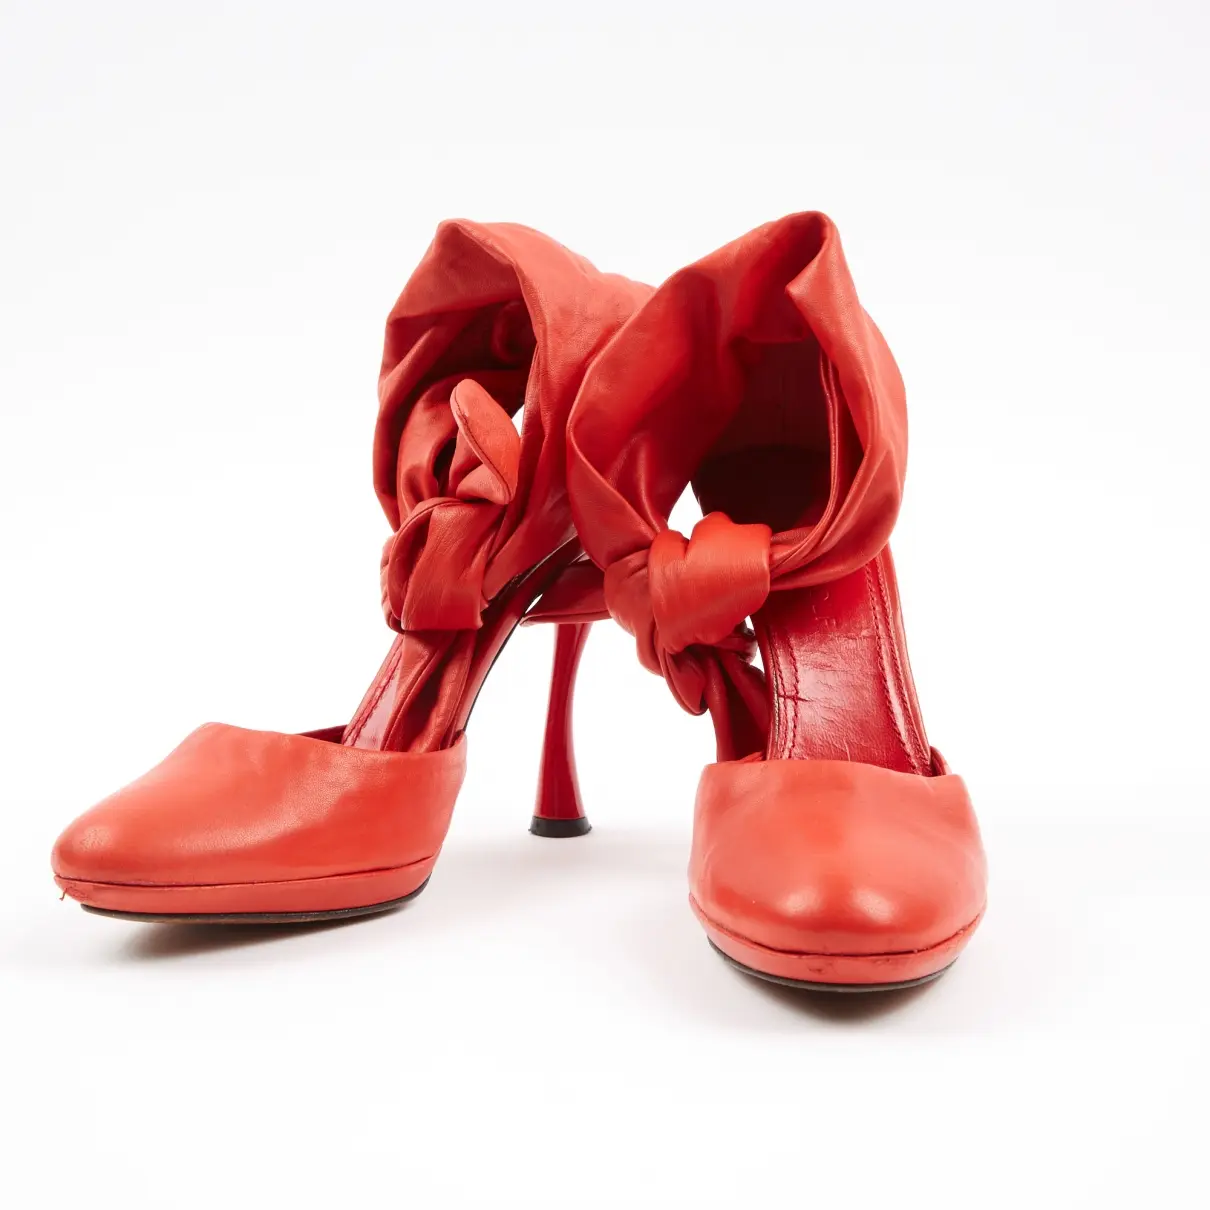 Viktor & Rolf Leather heels for sale